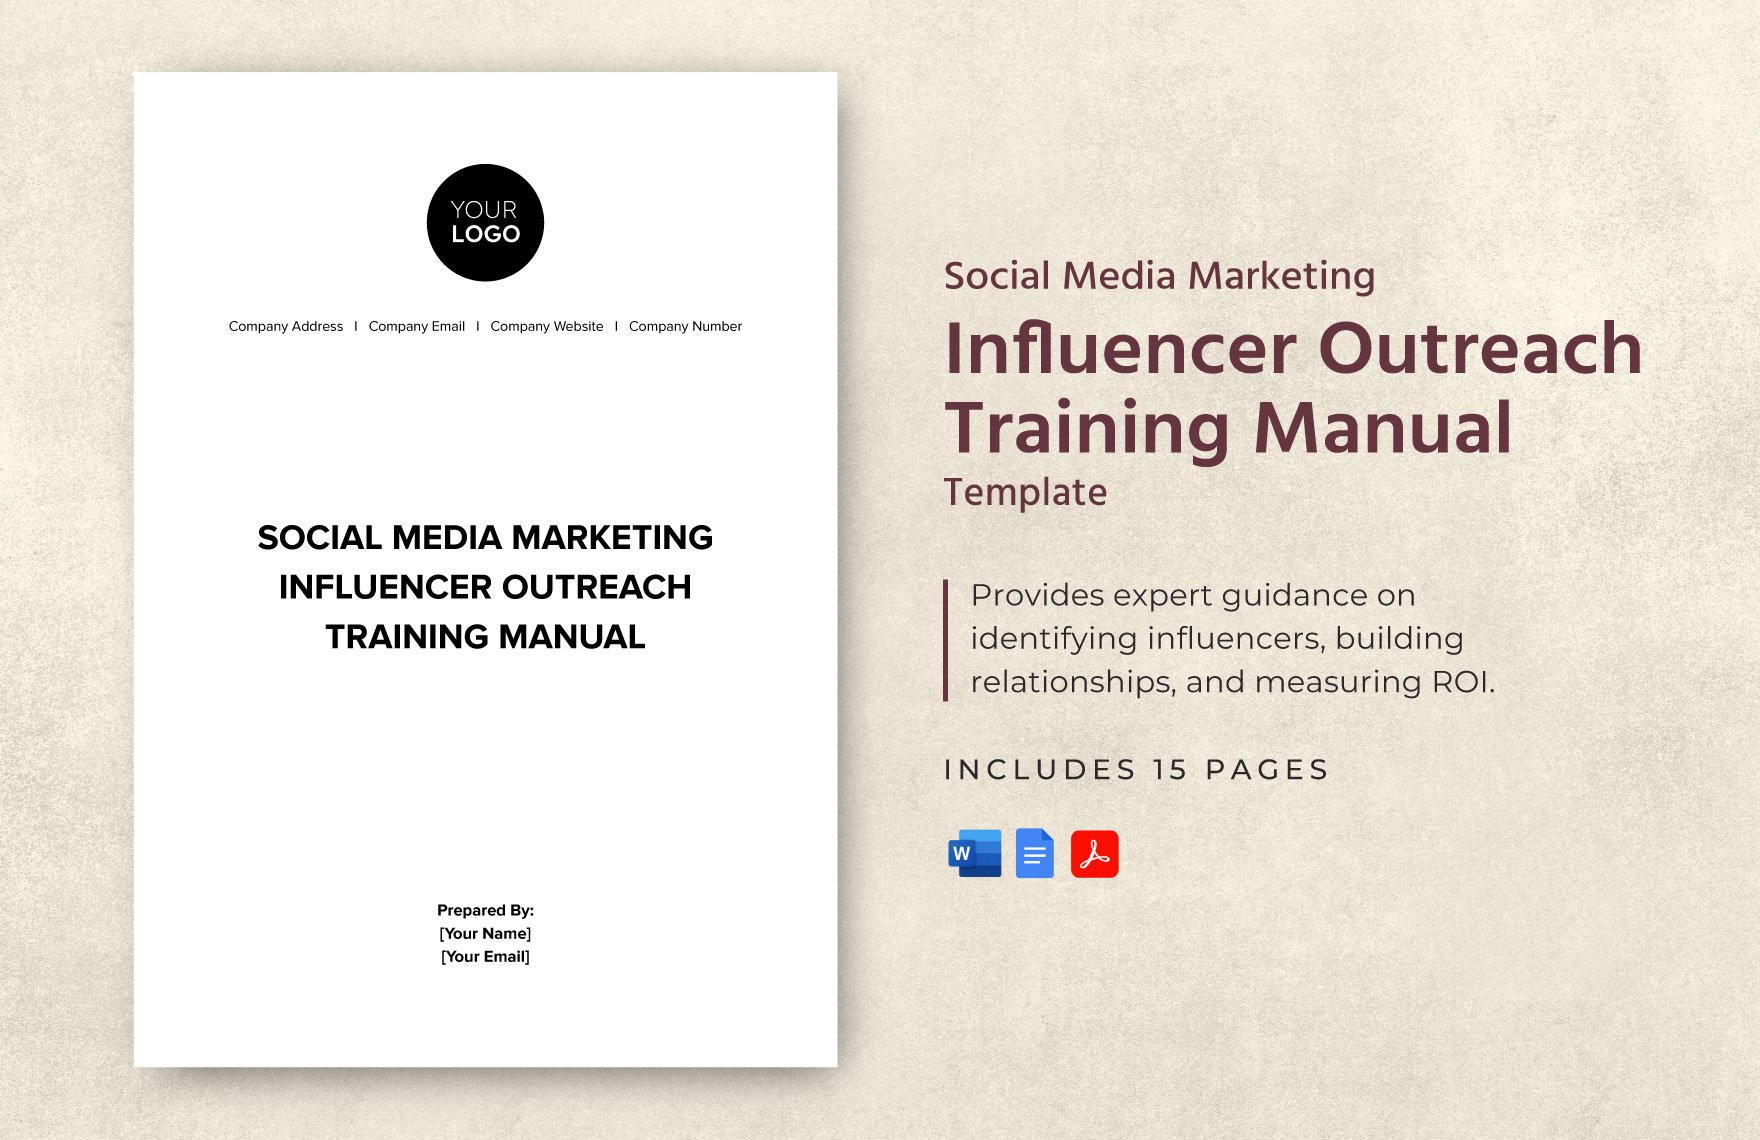 Social Media Marketing Influencer Outreach Training Manual Template